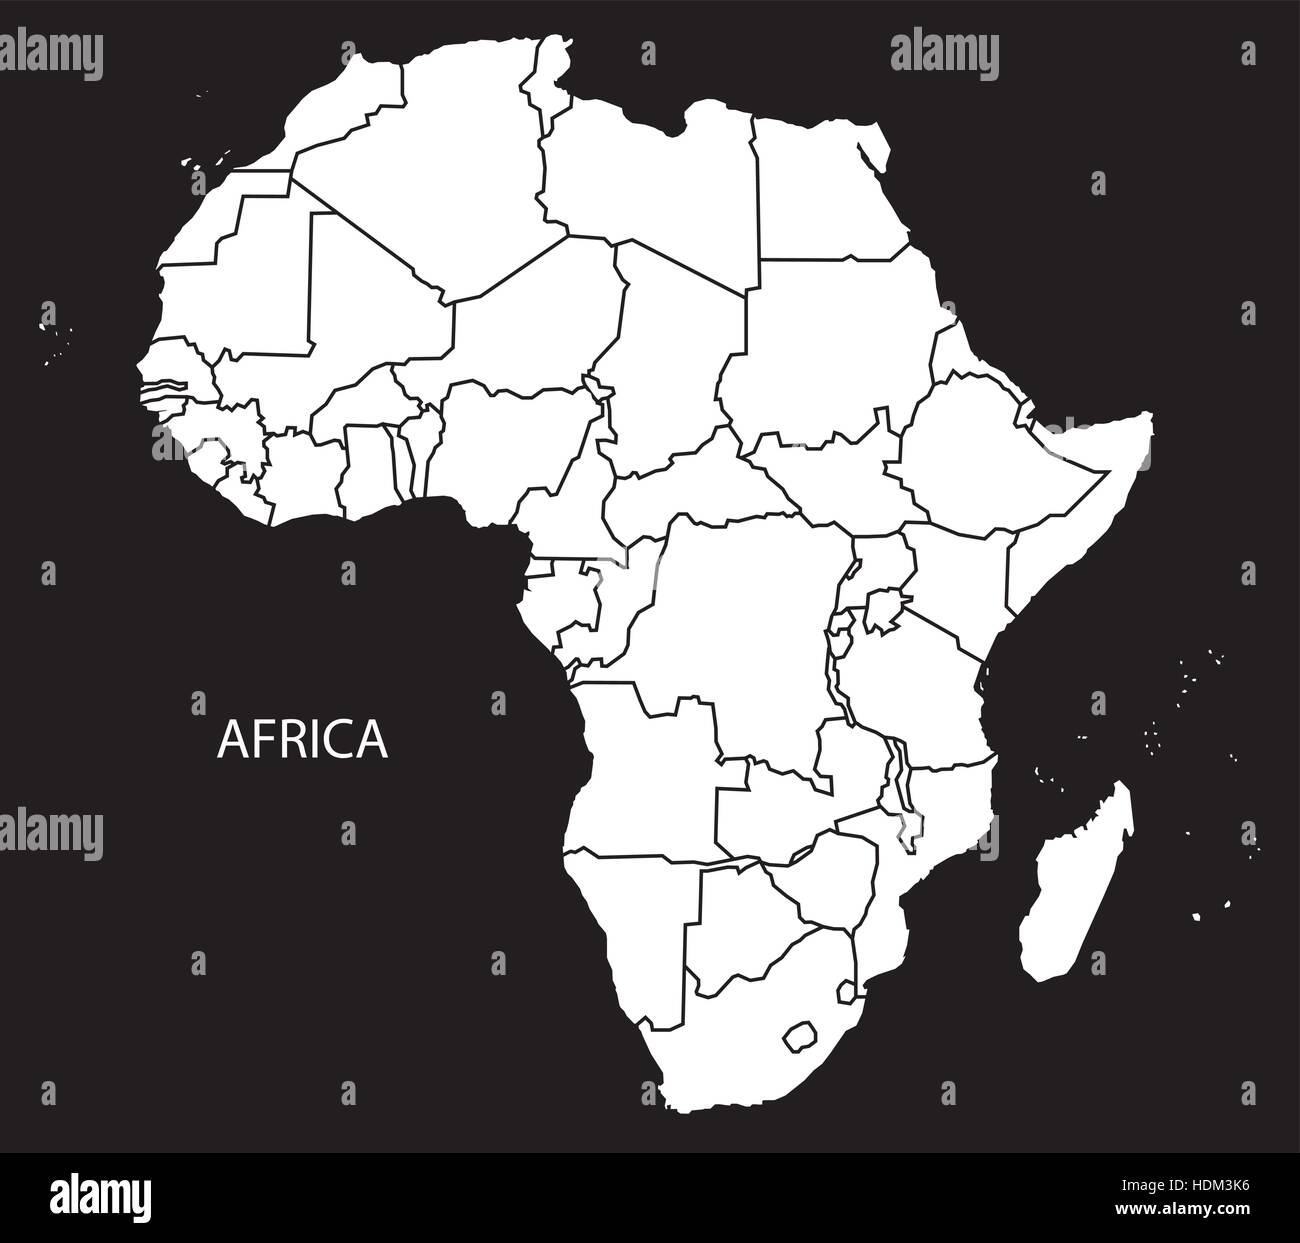 Mapa De África Con Los Países Ilustración En Blanco Y Negro Imagen Vector De Stock Alamy 1228